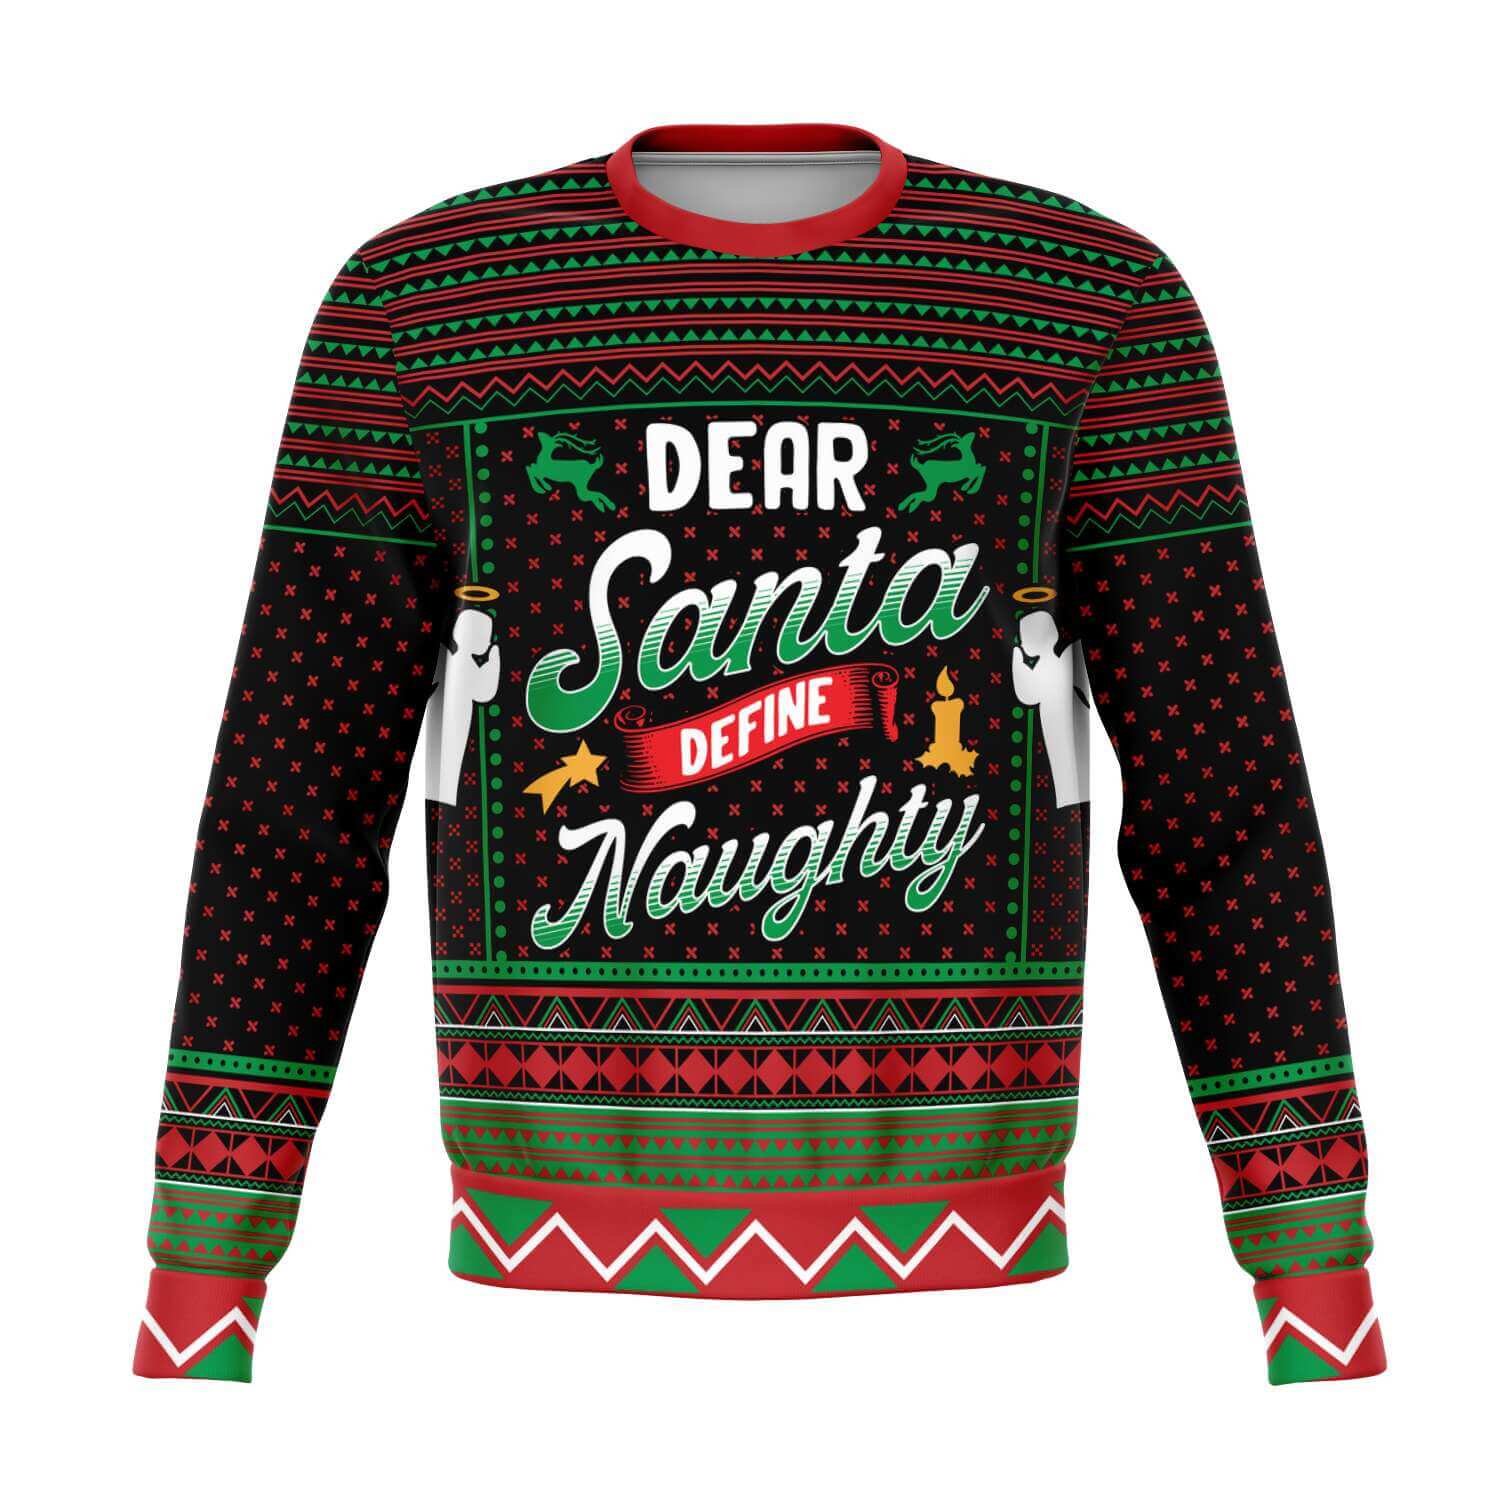 Dear-Santa-Define-Naughty-Athletic-Fashion-sweatshirt